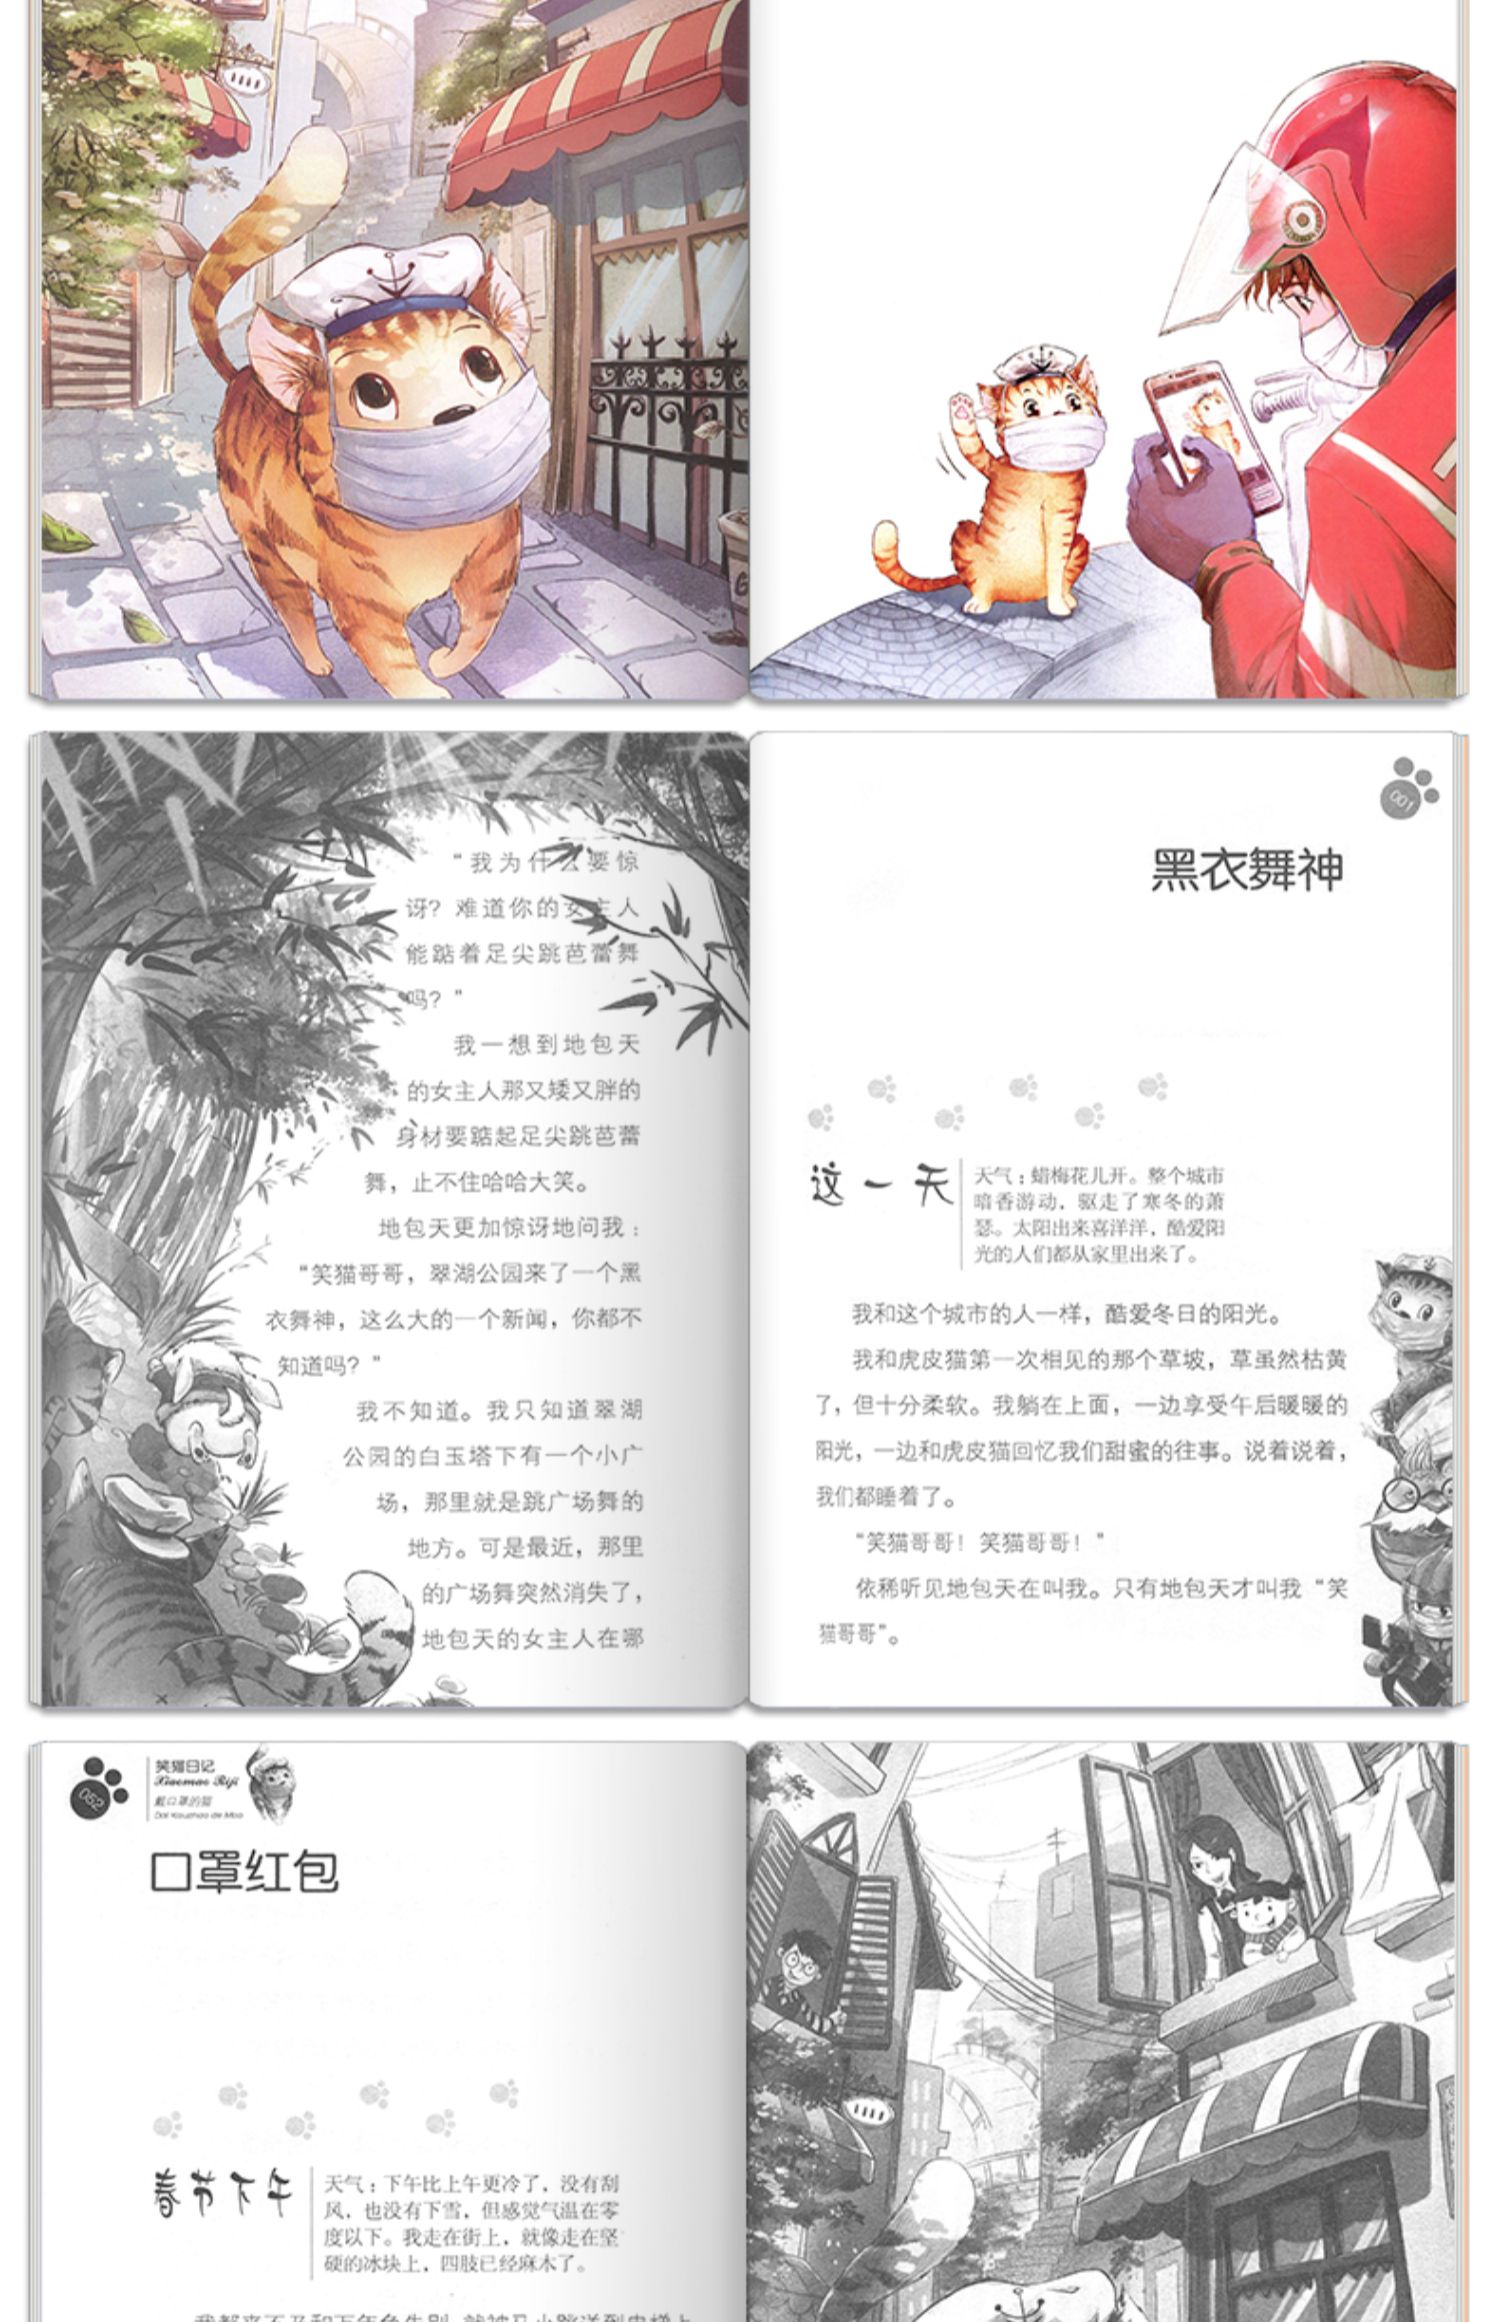 笑猫日记插画-图库-五毛网